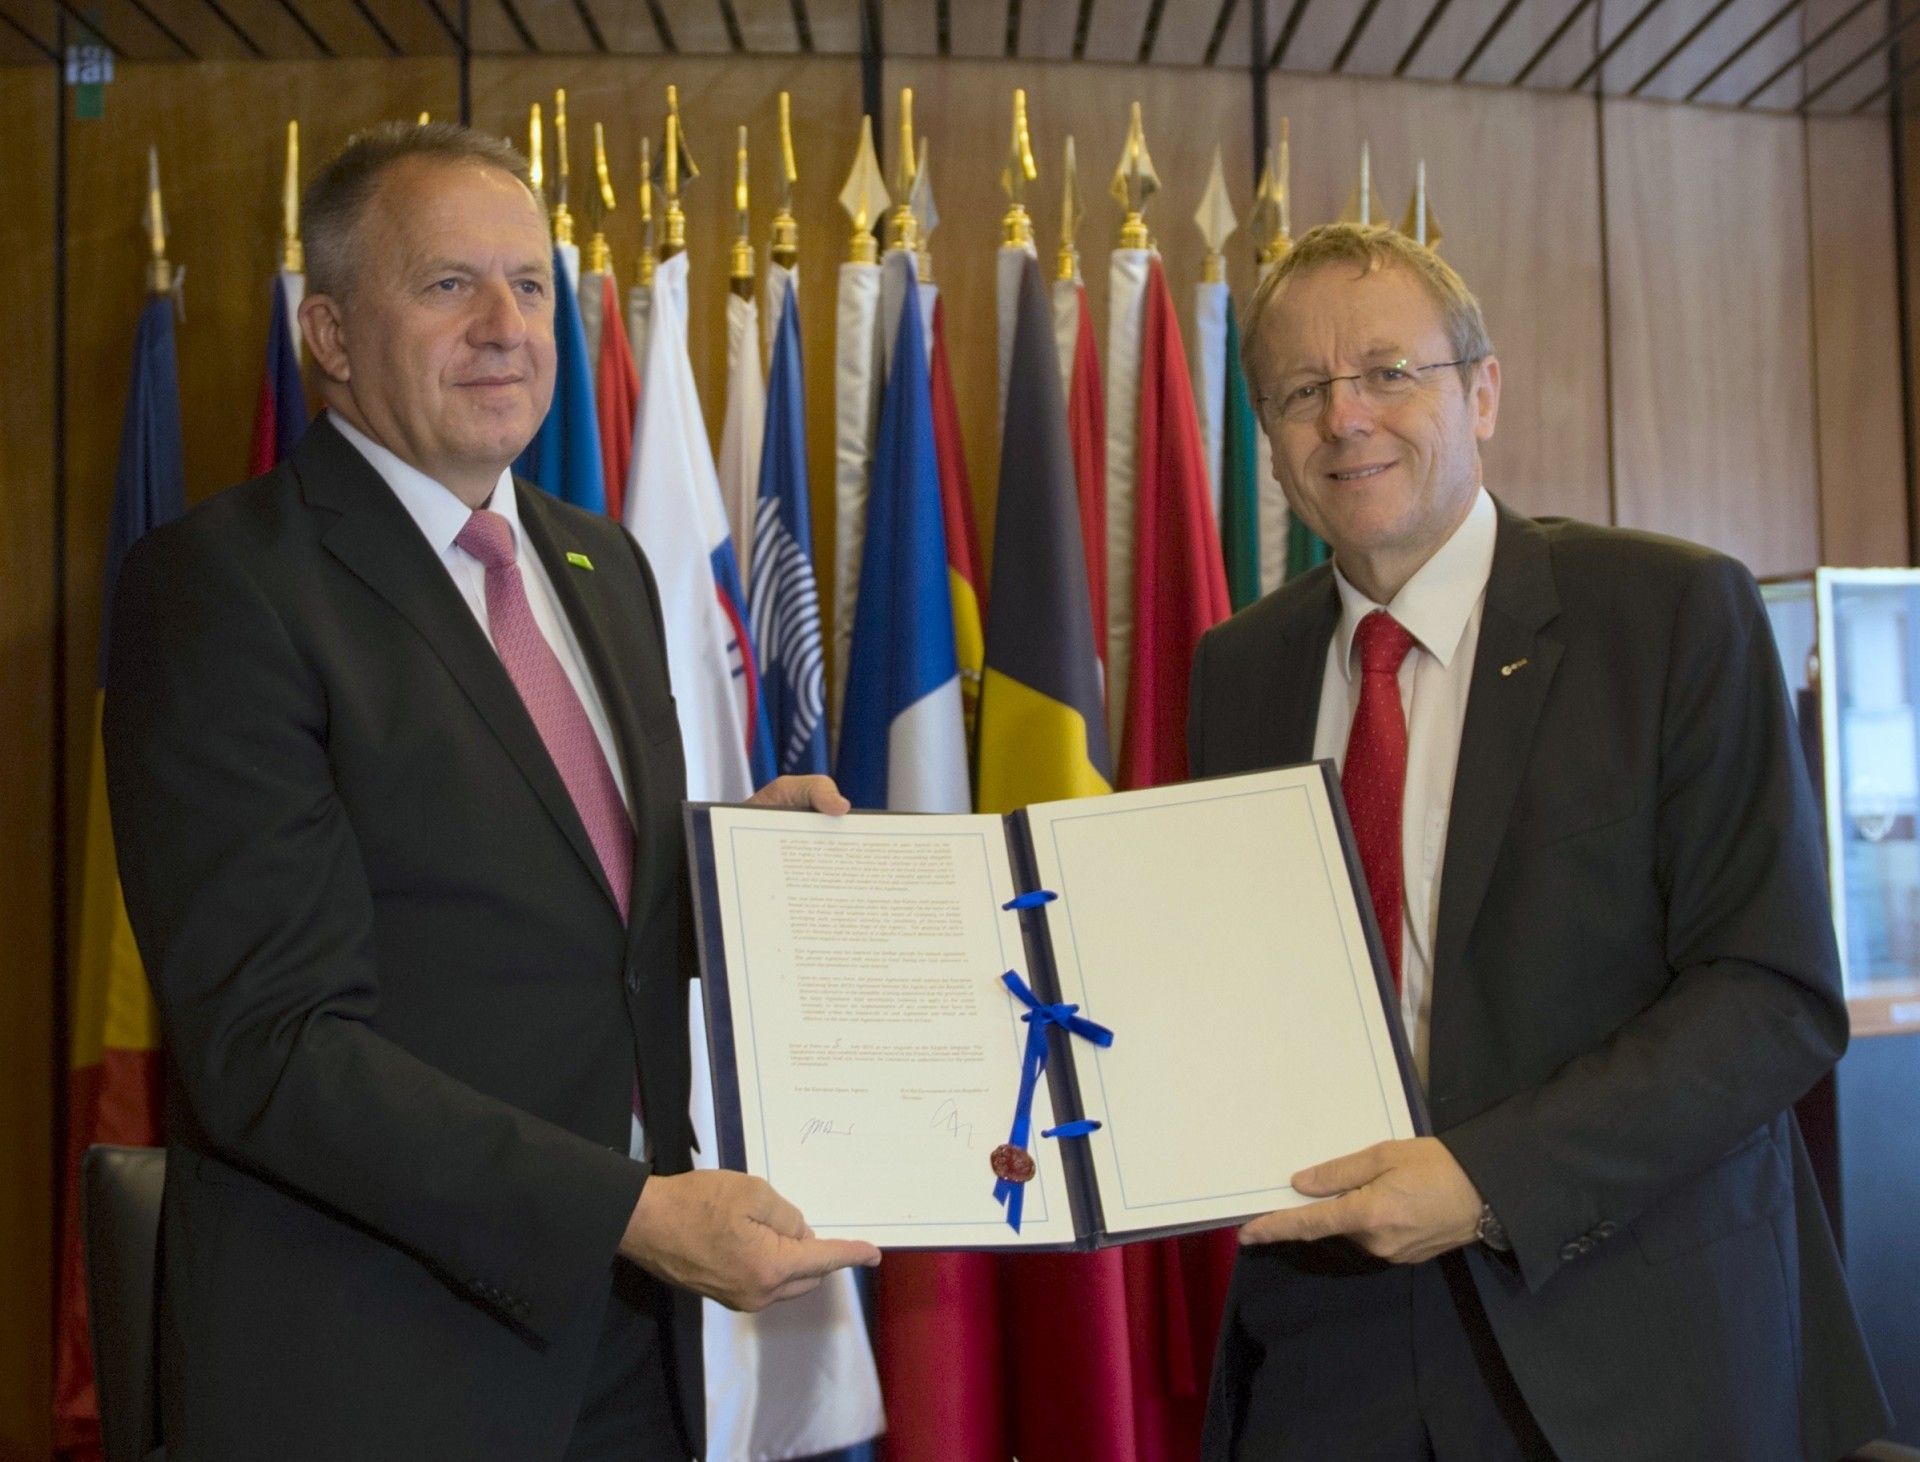 Minister Ekonomii i Technologii Słowenii Zdravko Počivalšek (po lewej) i dyrektor generalny ESA Johann-Dietrich Woerner (po prawej) z umową o stowarzyszeniu w siedzibie ESA w Paryżu, fot: ESA